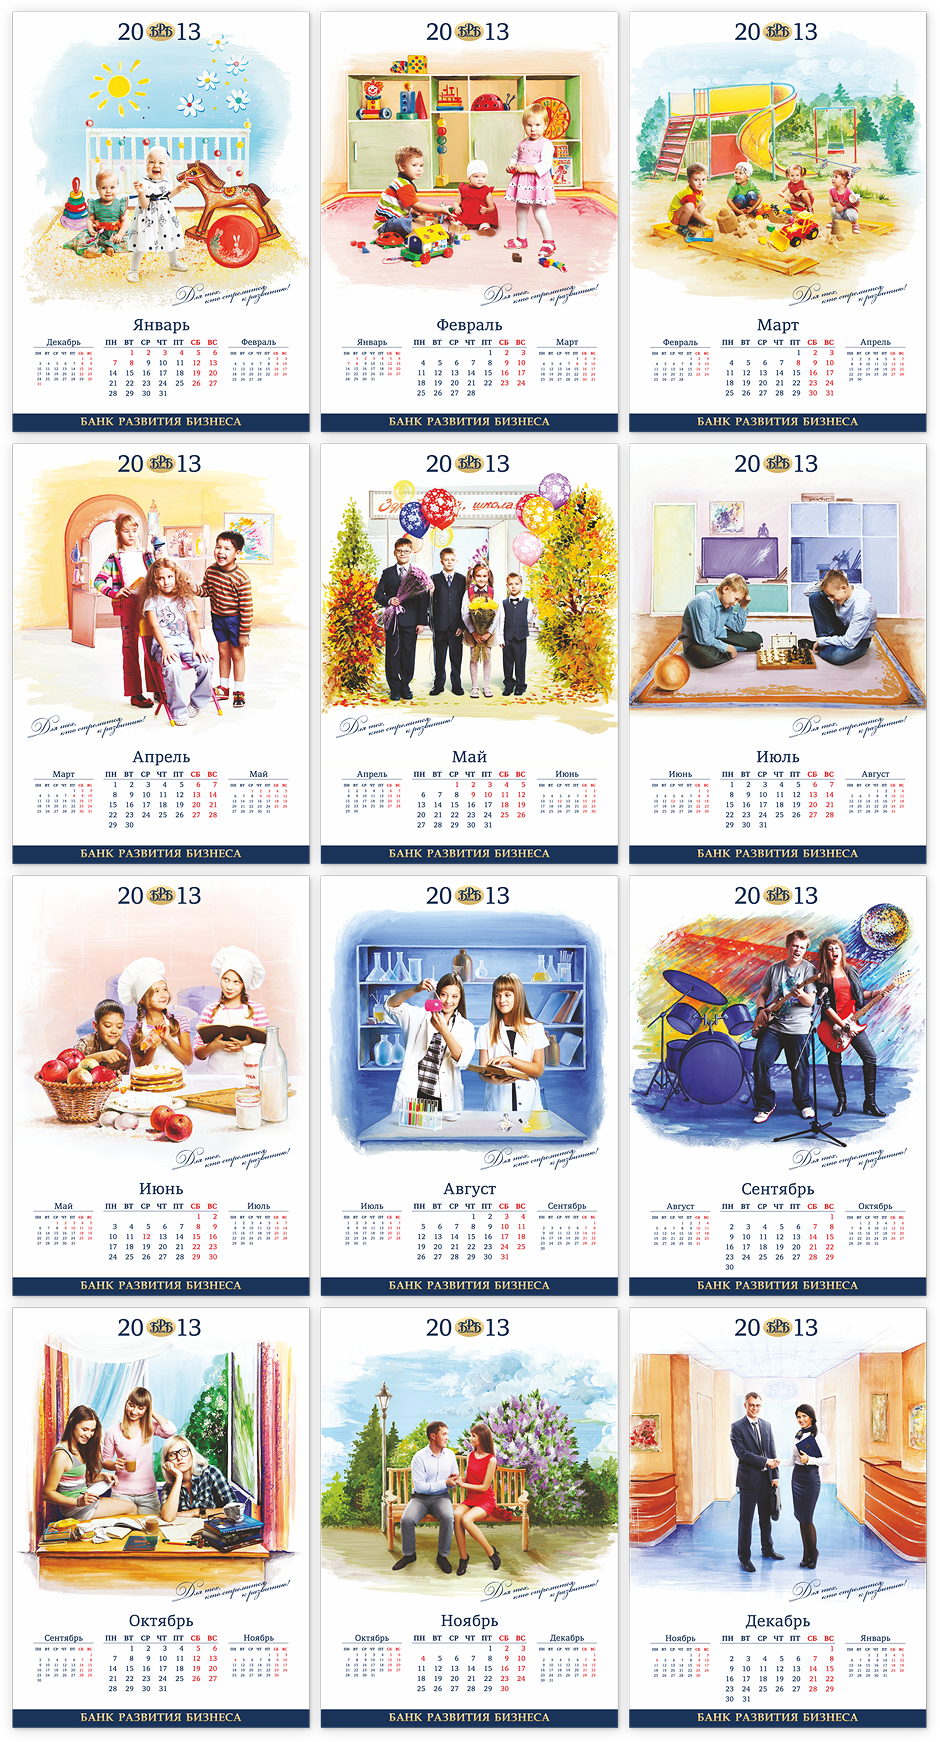 Фотосъемка и дизайн серии календарей «Банк Развития Бизнеса — 2013»